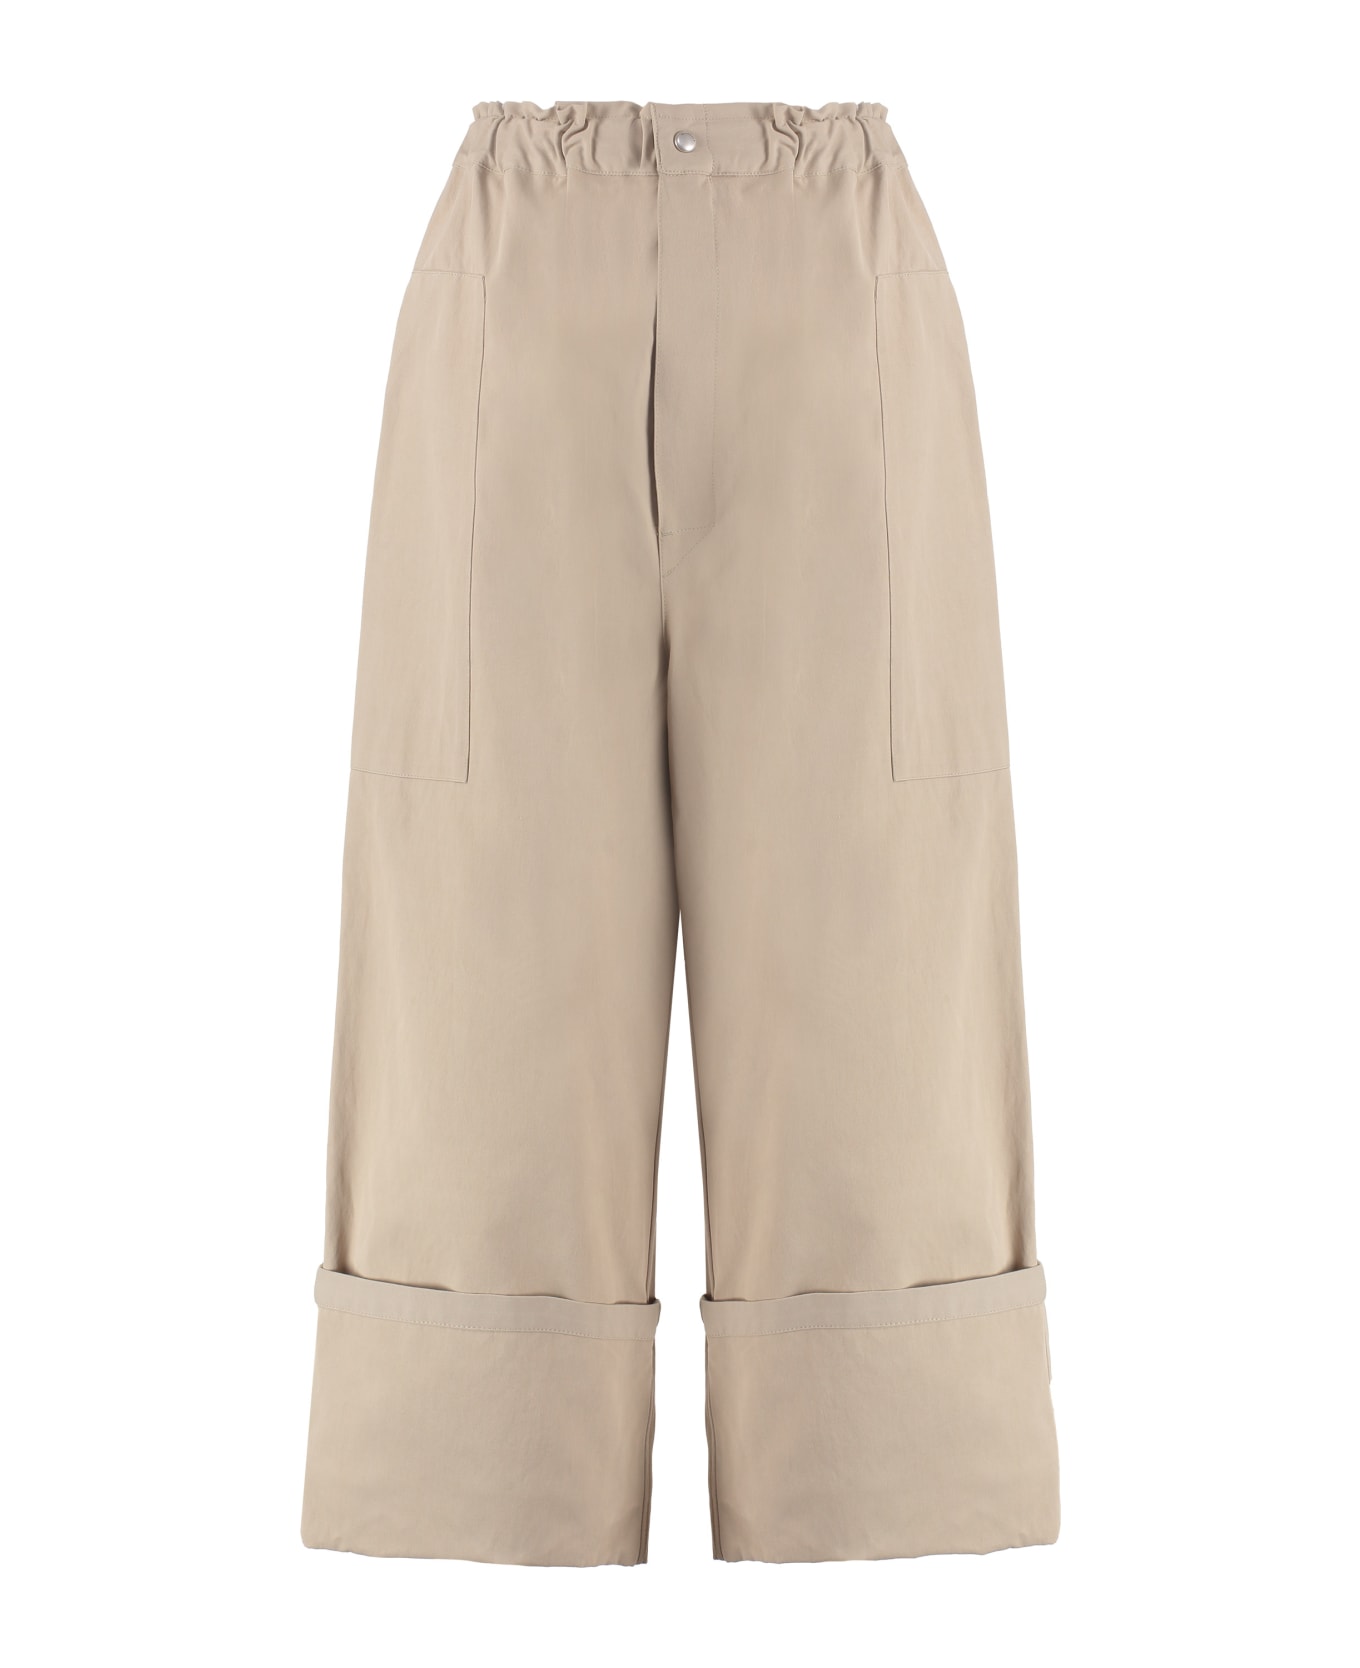 Moncler Genius 2 Moncler 1952 - Cotton Blend Wide Leg Trousers - Beige